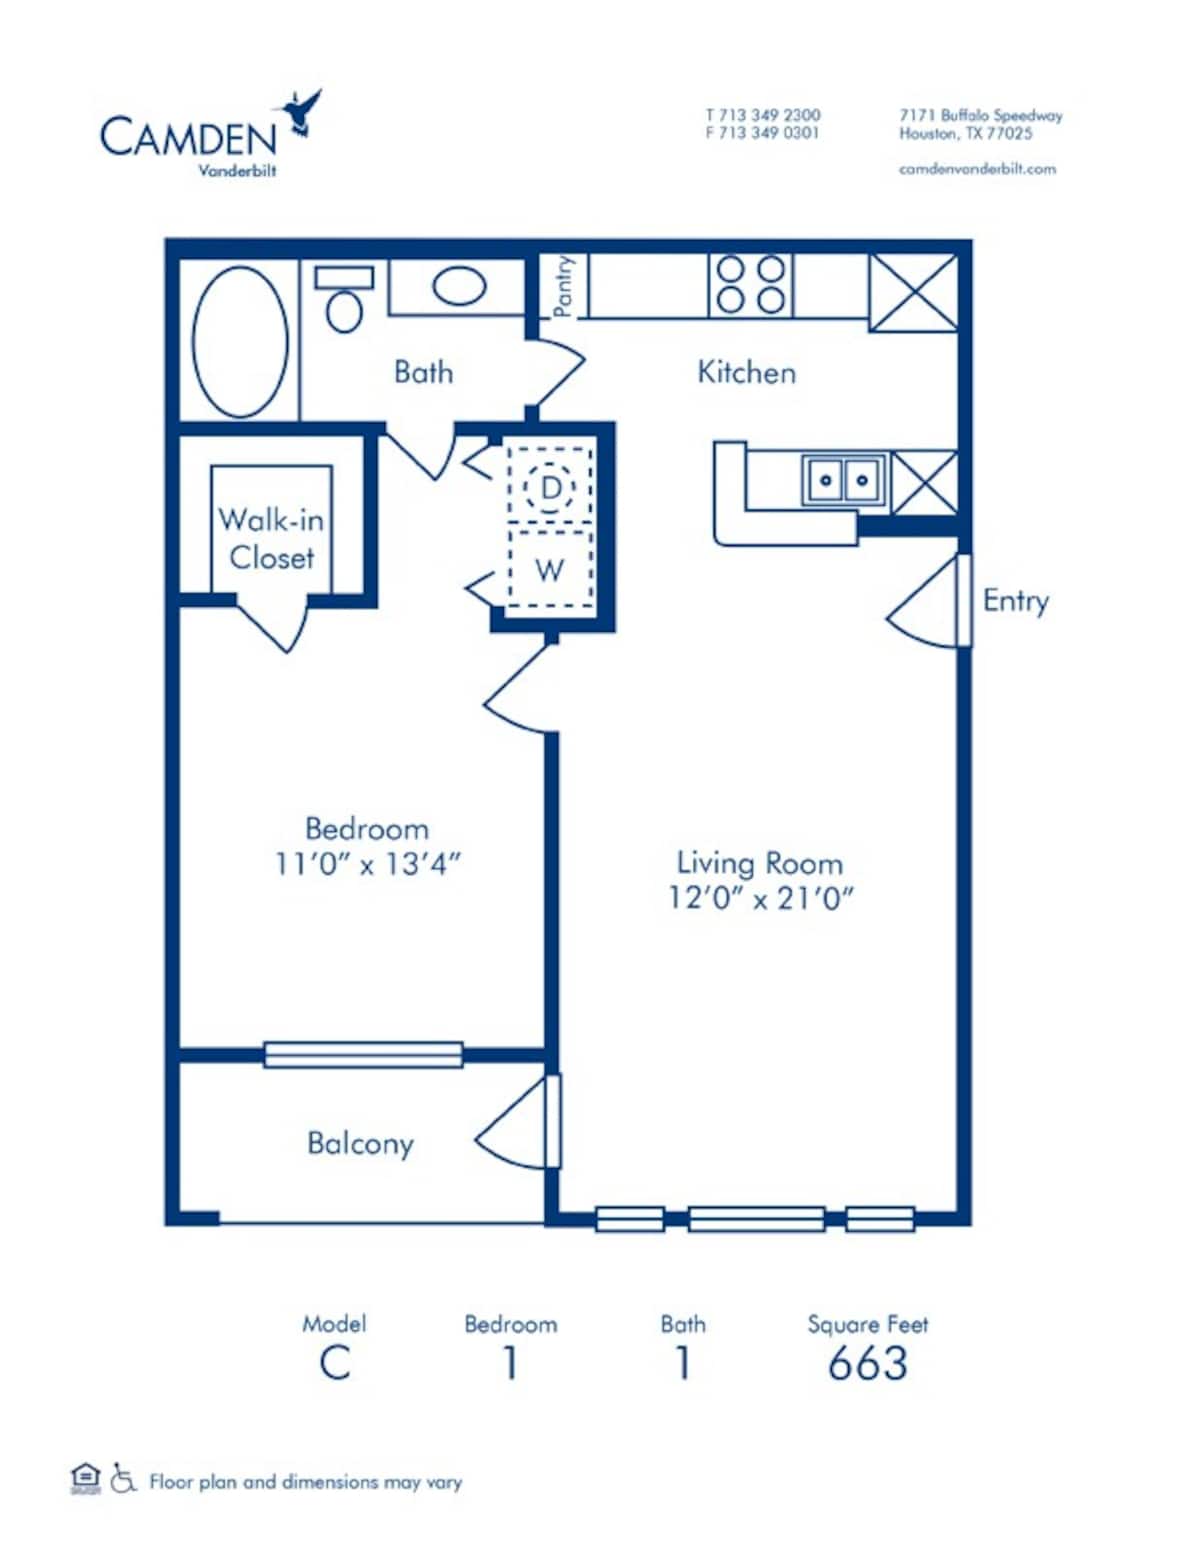 Floorplan diagram for C, showing 1 bedroom